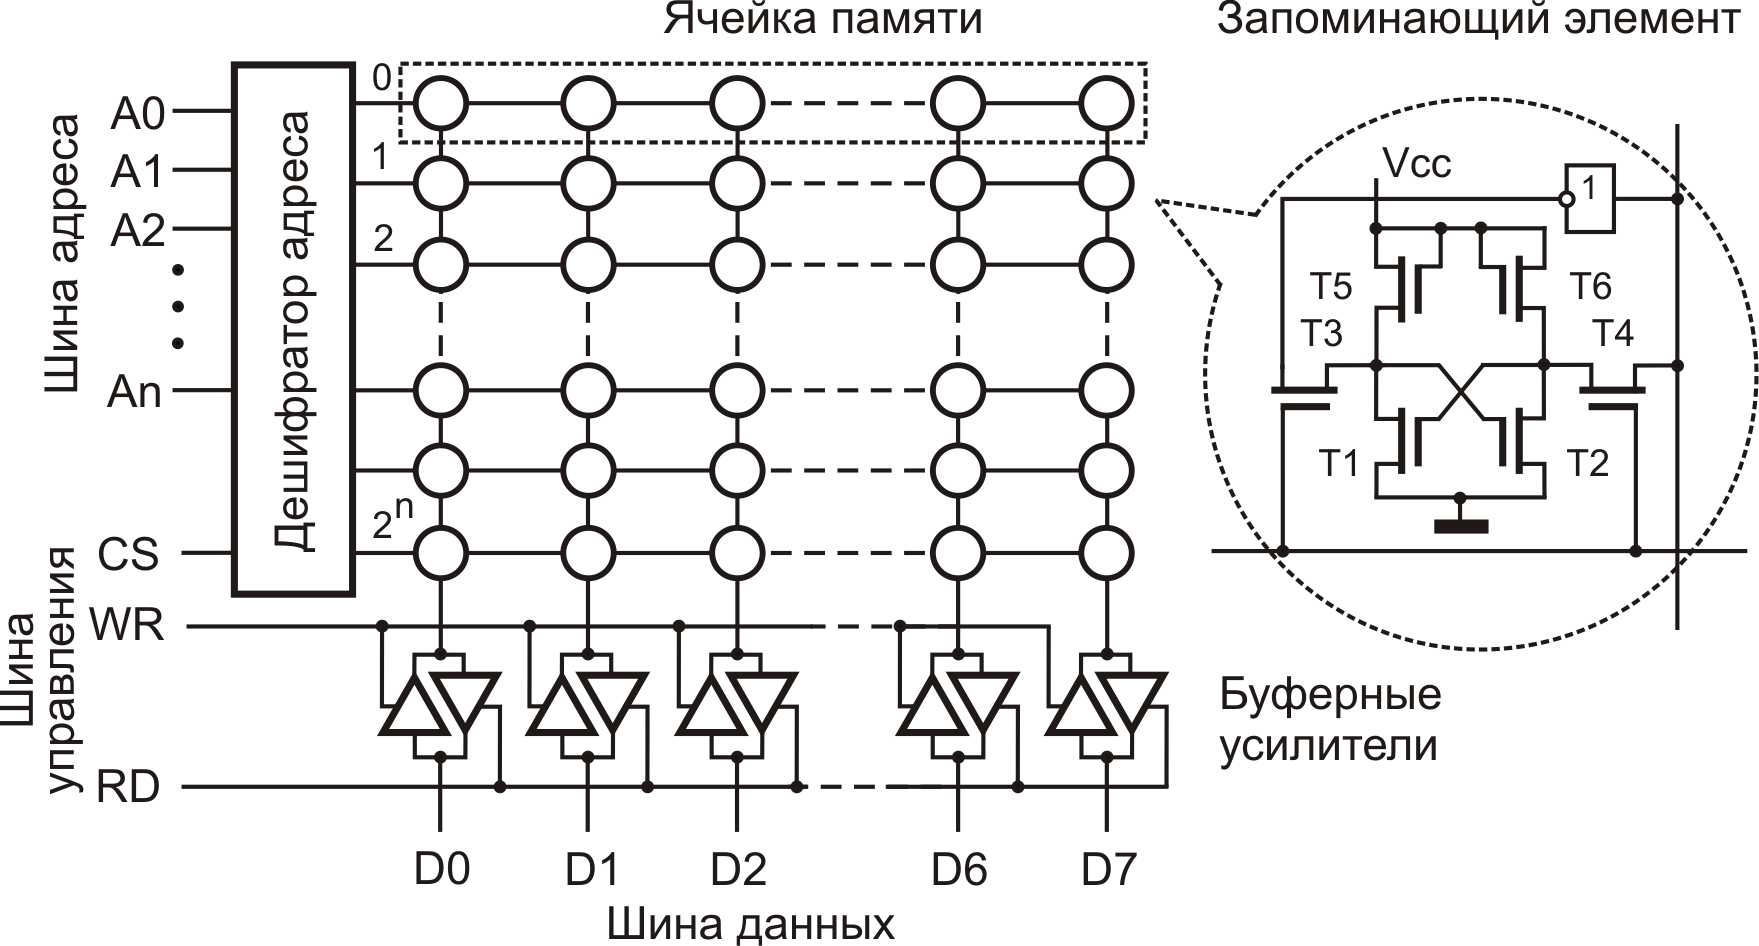 Ячейка памяти компьютера схема. Феррит-транзисторная ячейка памяти. Схема ячейки памяти ОЗУ. Схема ячейки памяти на 1 бит. Электронная ячейка памяти